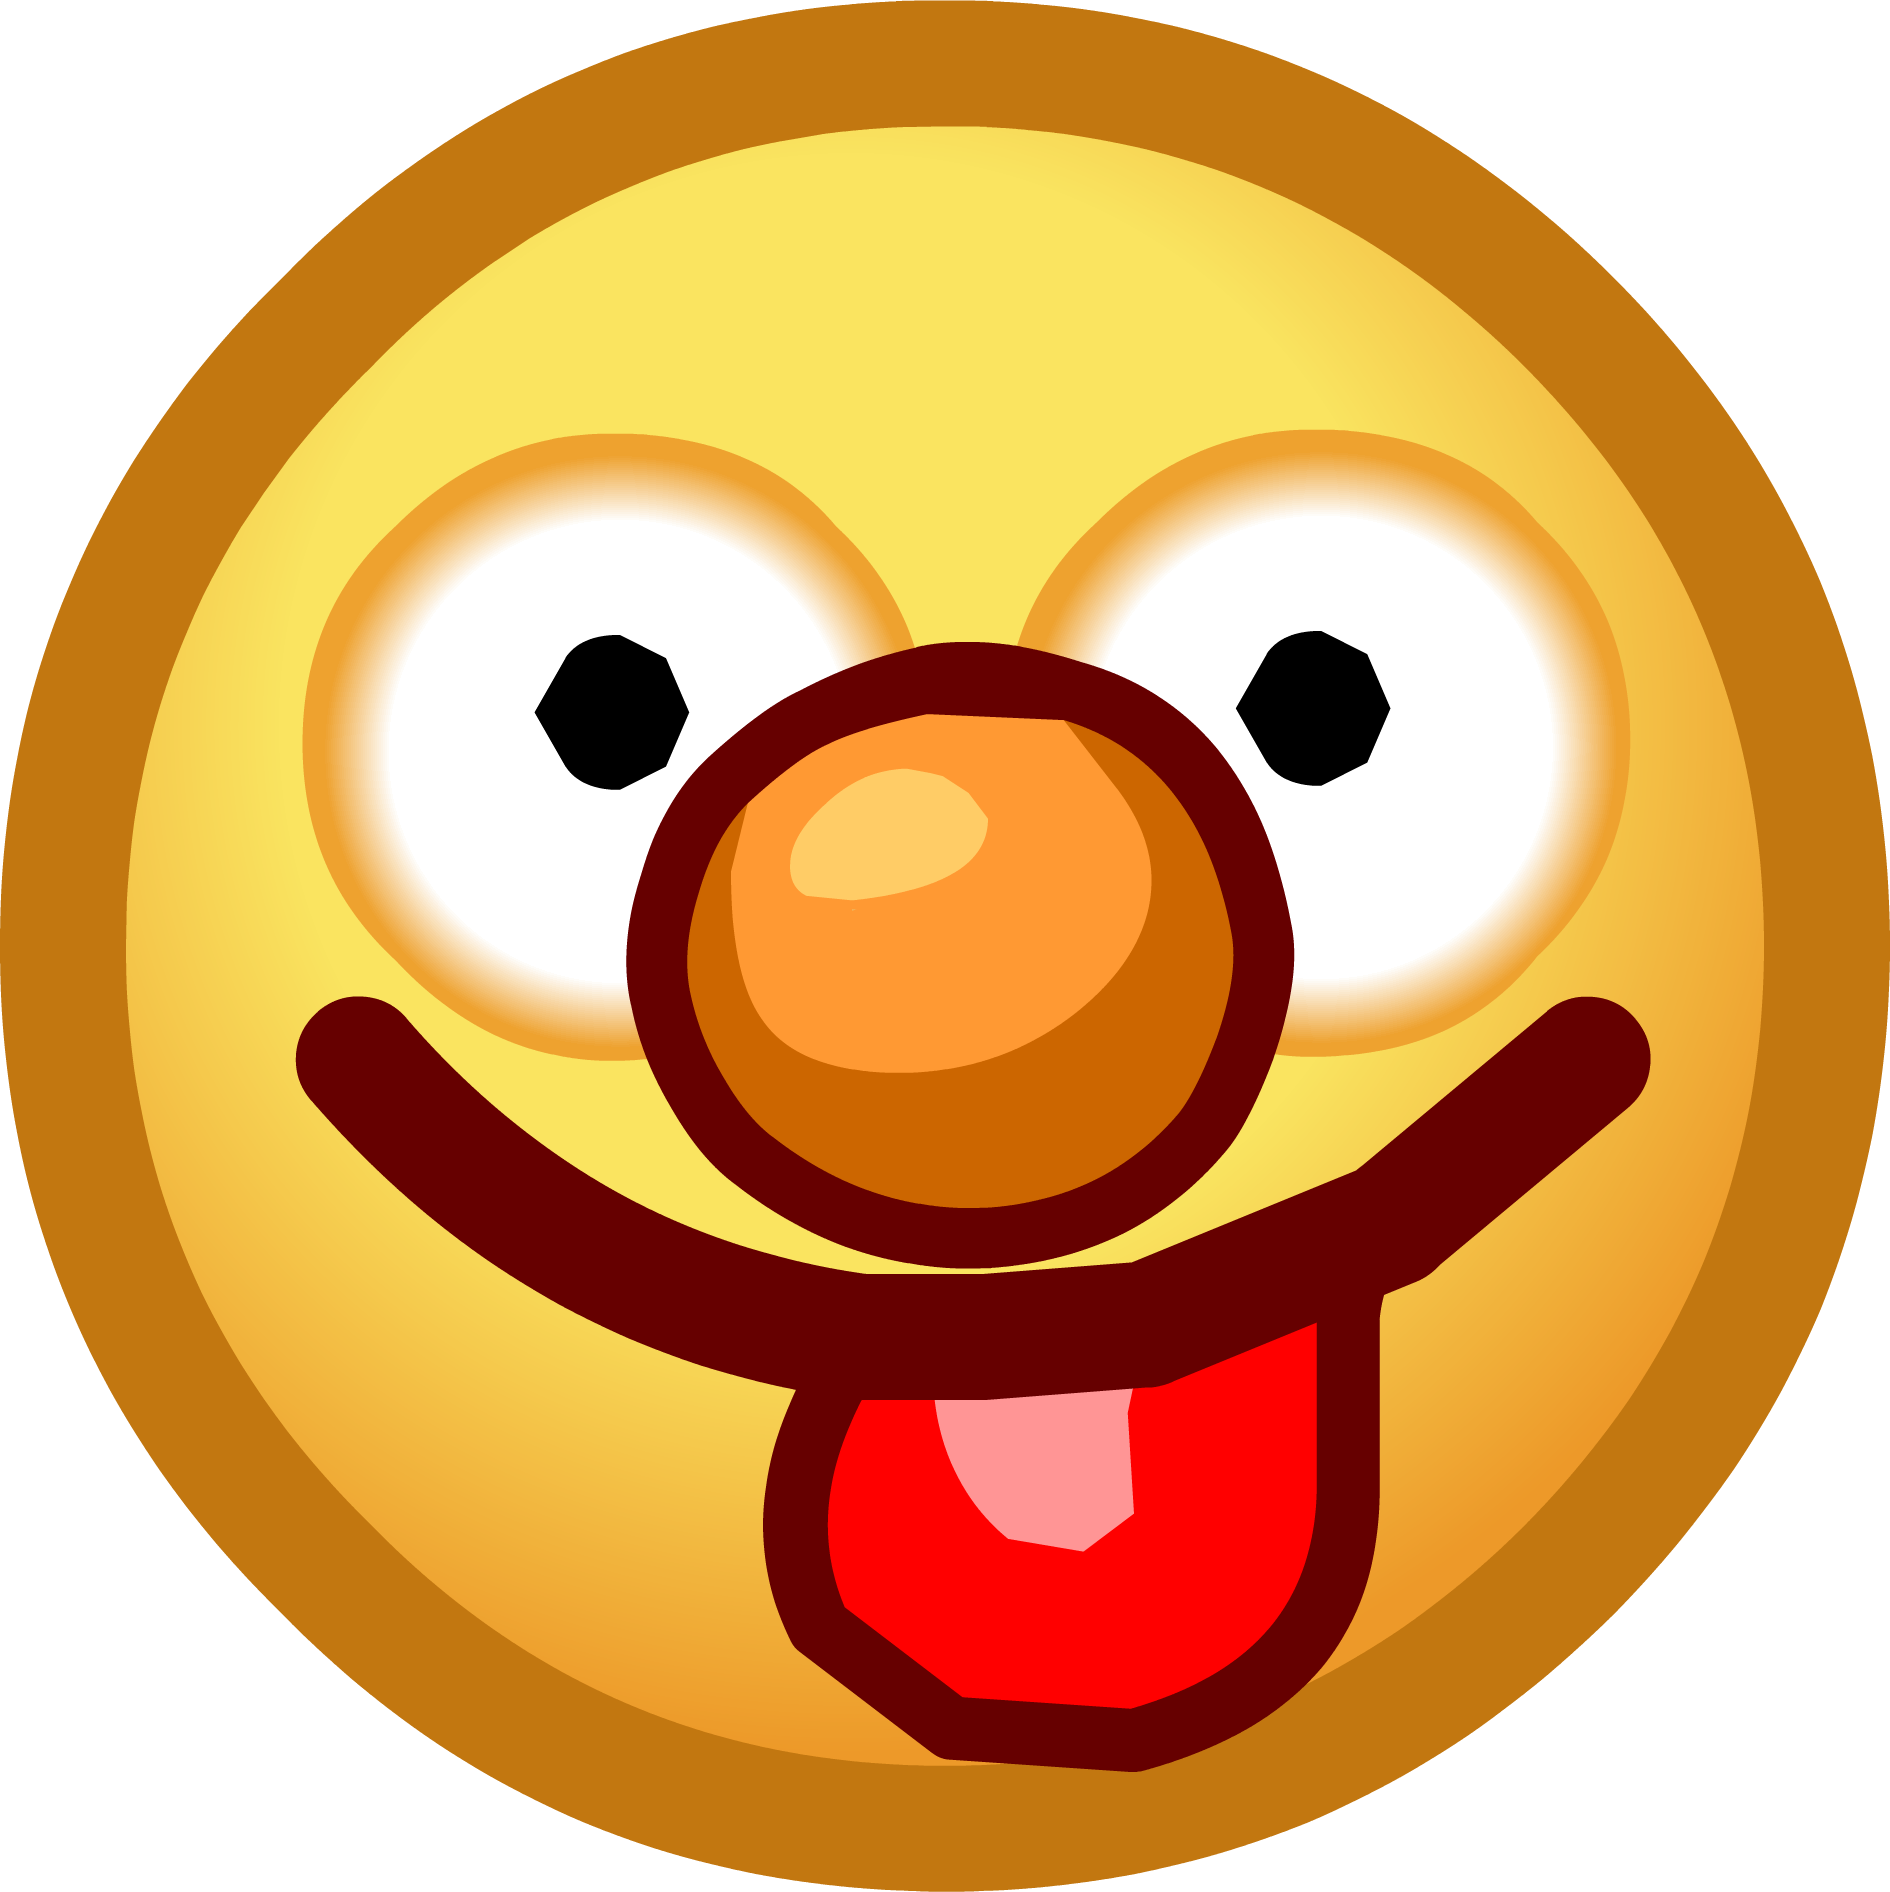 Smiley Emoticon Tongue Clip art - Tongue Face Emoticon png download ...